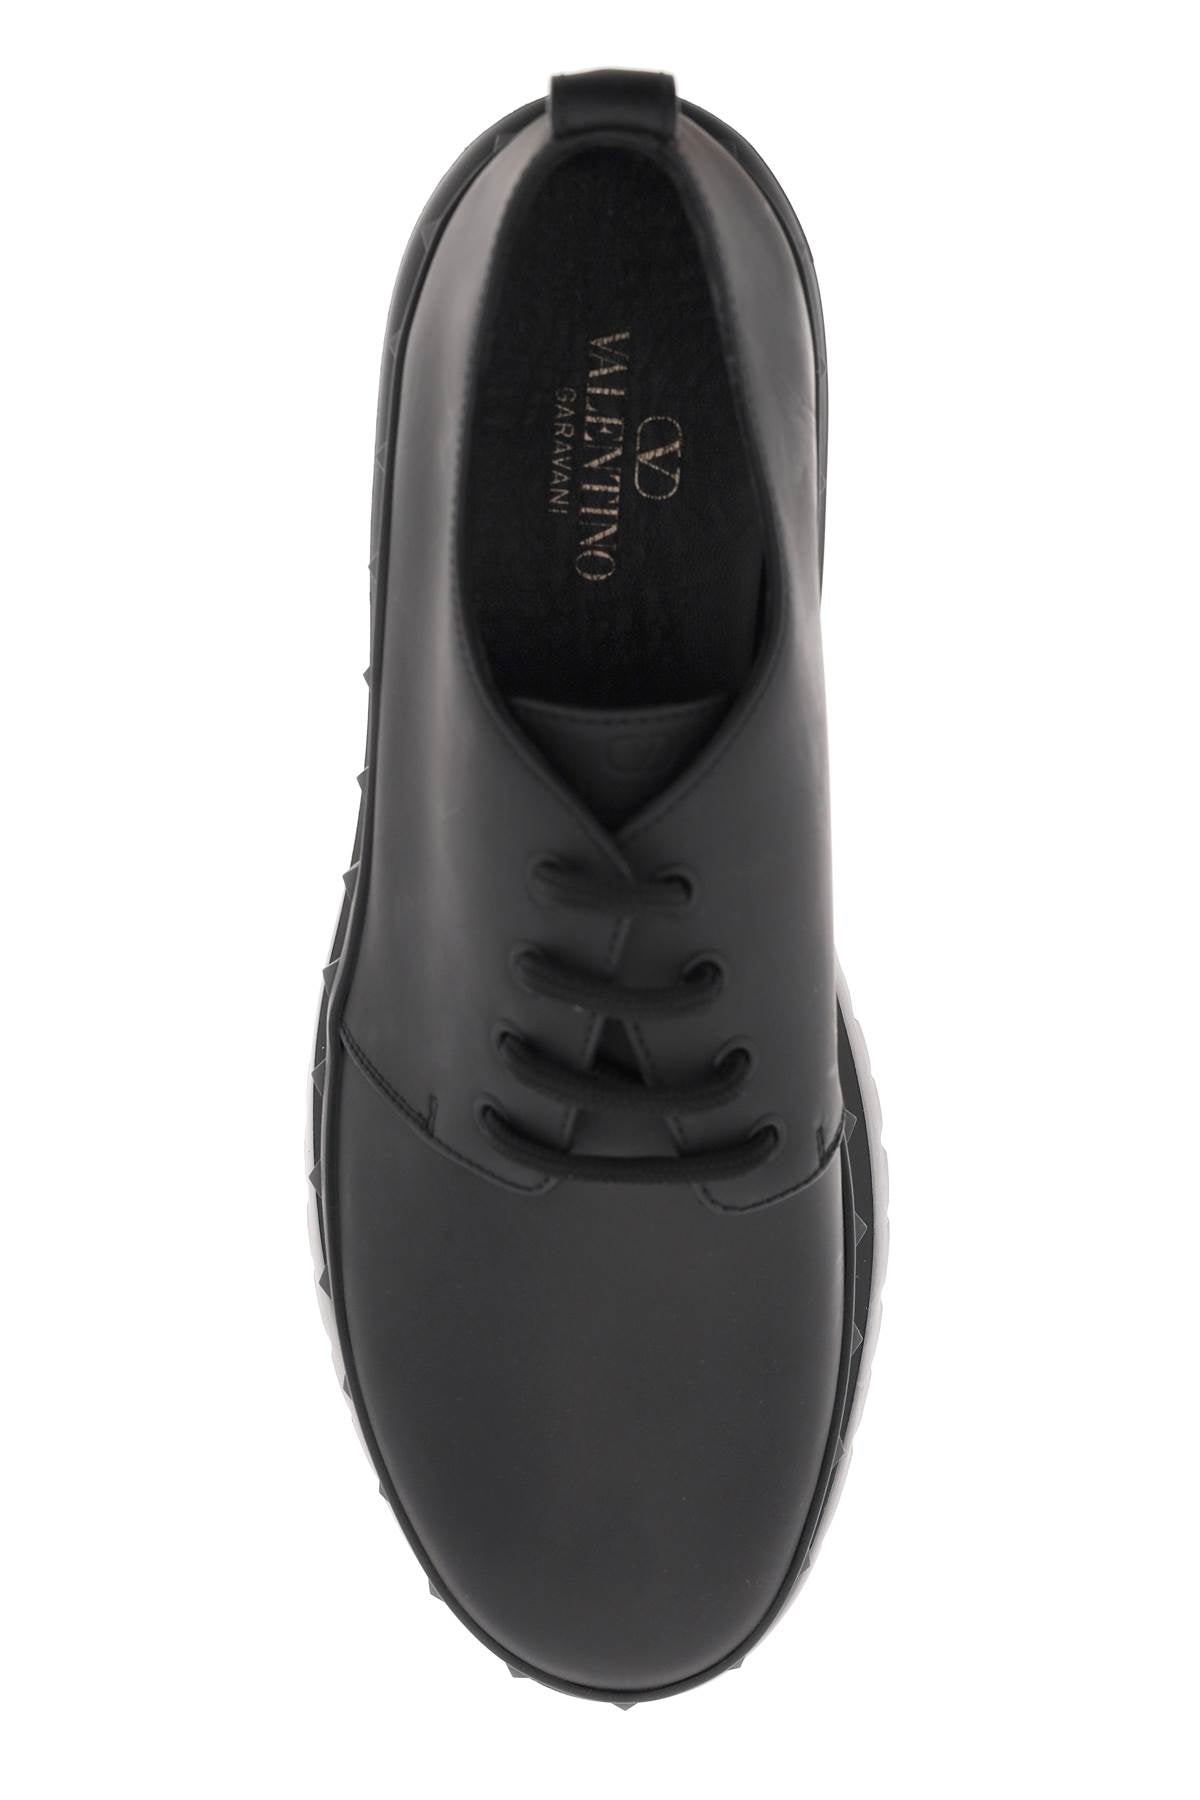 Valentino GARAVANI Valentino garavani rockstud m-way leather derby shoes